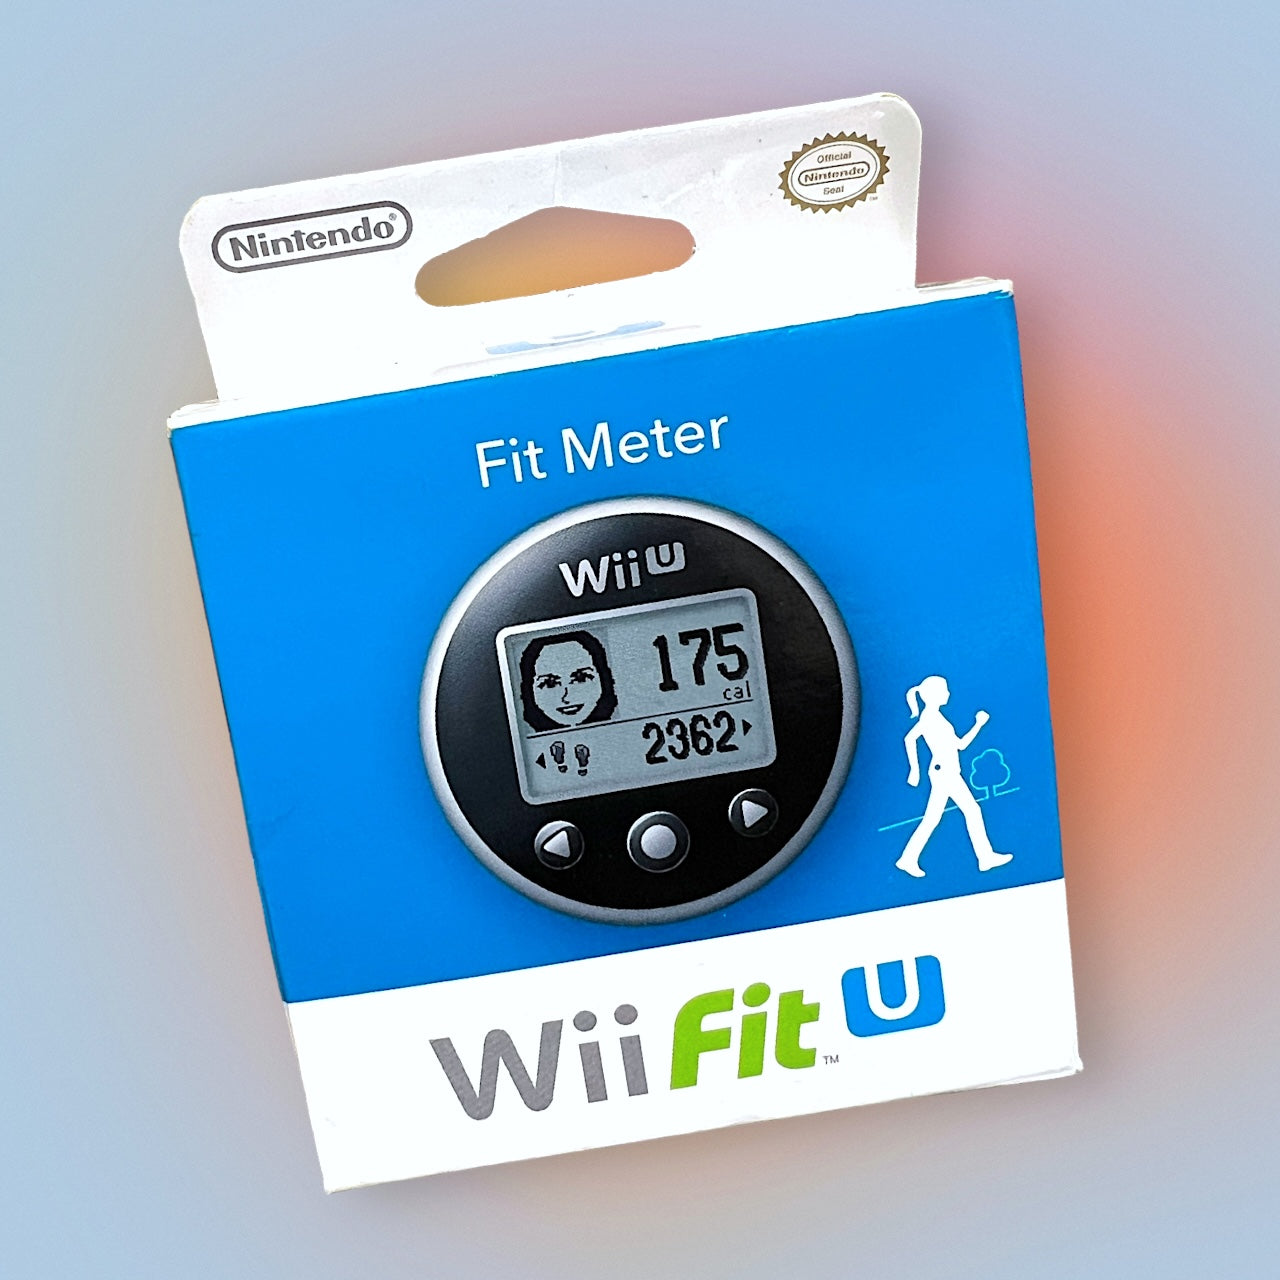 Wii U Fit Meter (Nintendo, 2013)